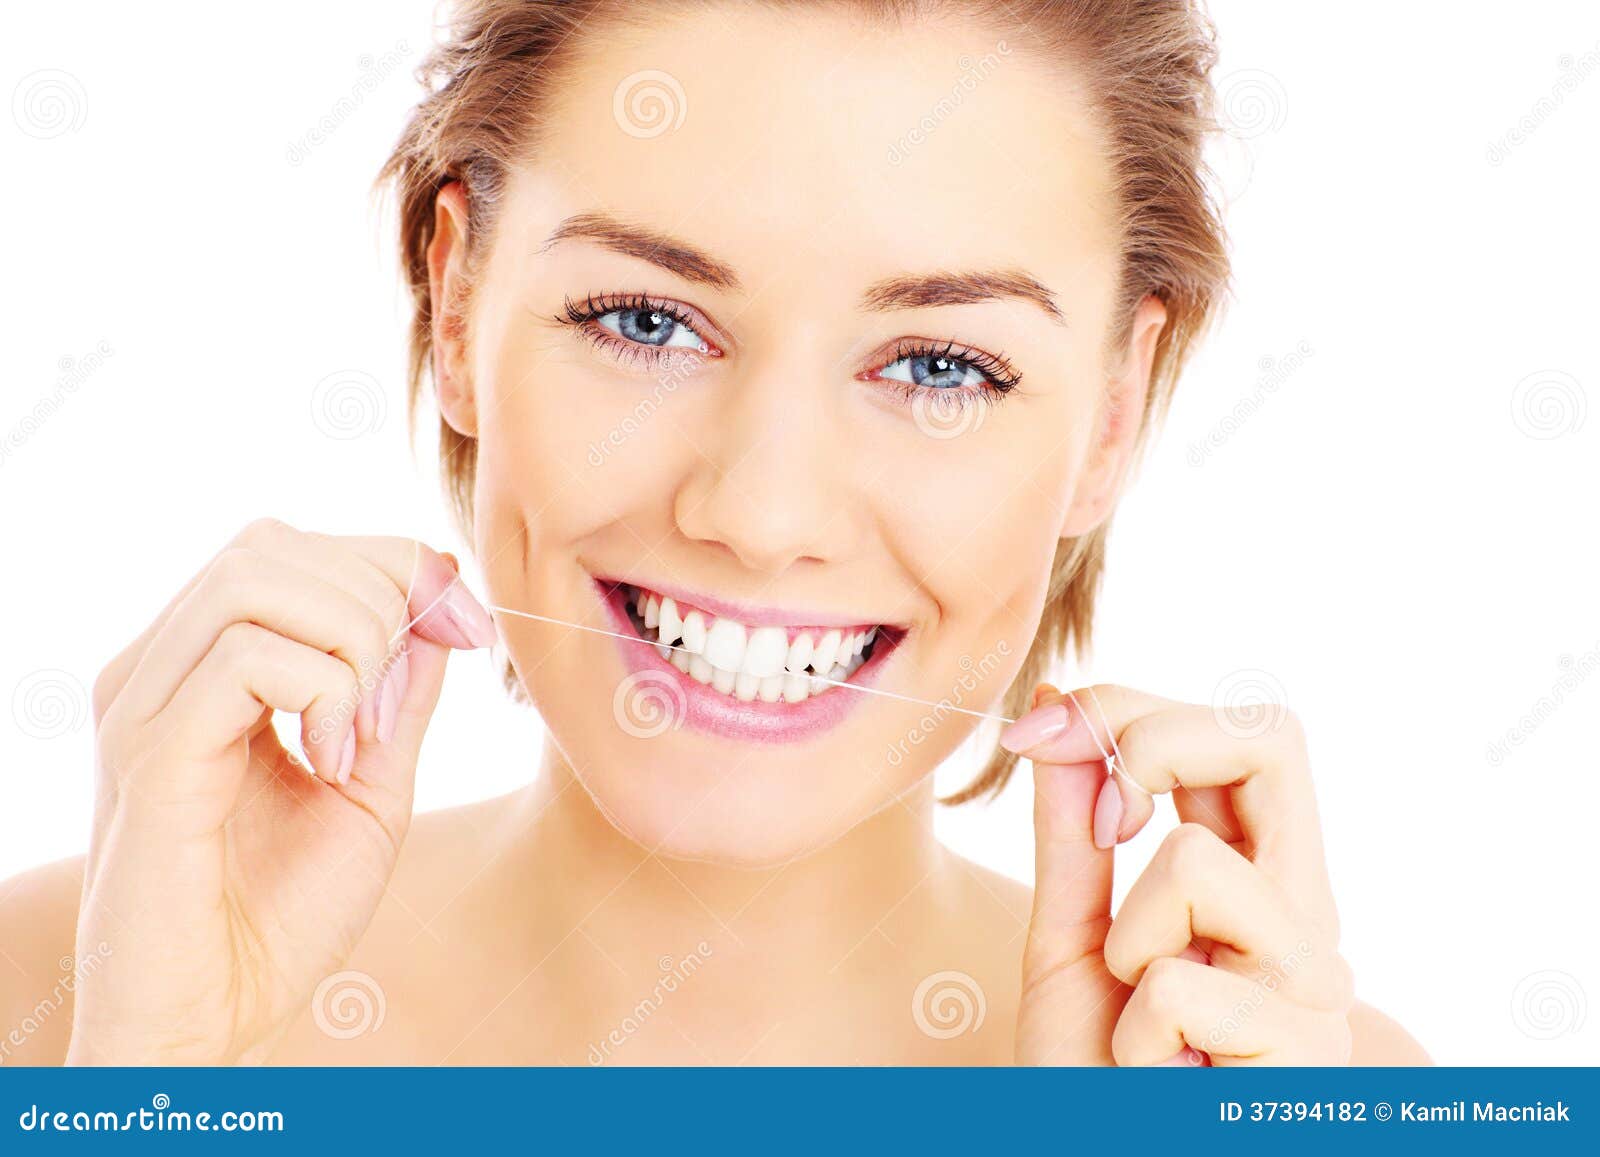 teeth flossing